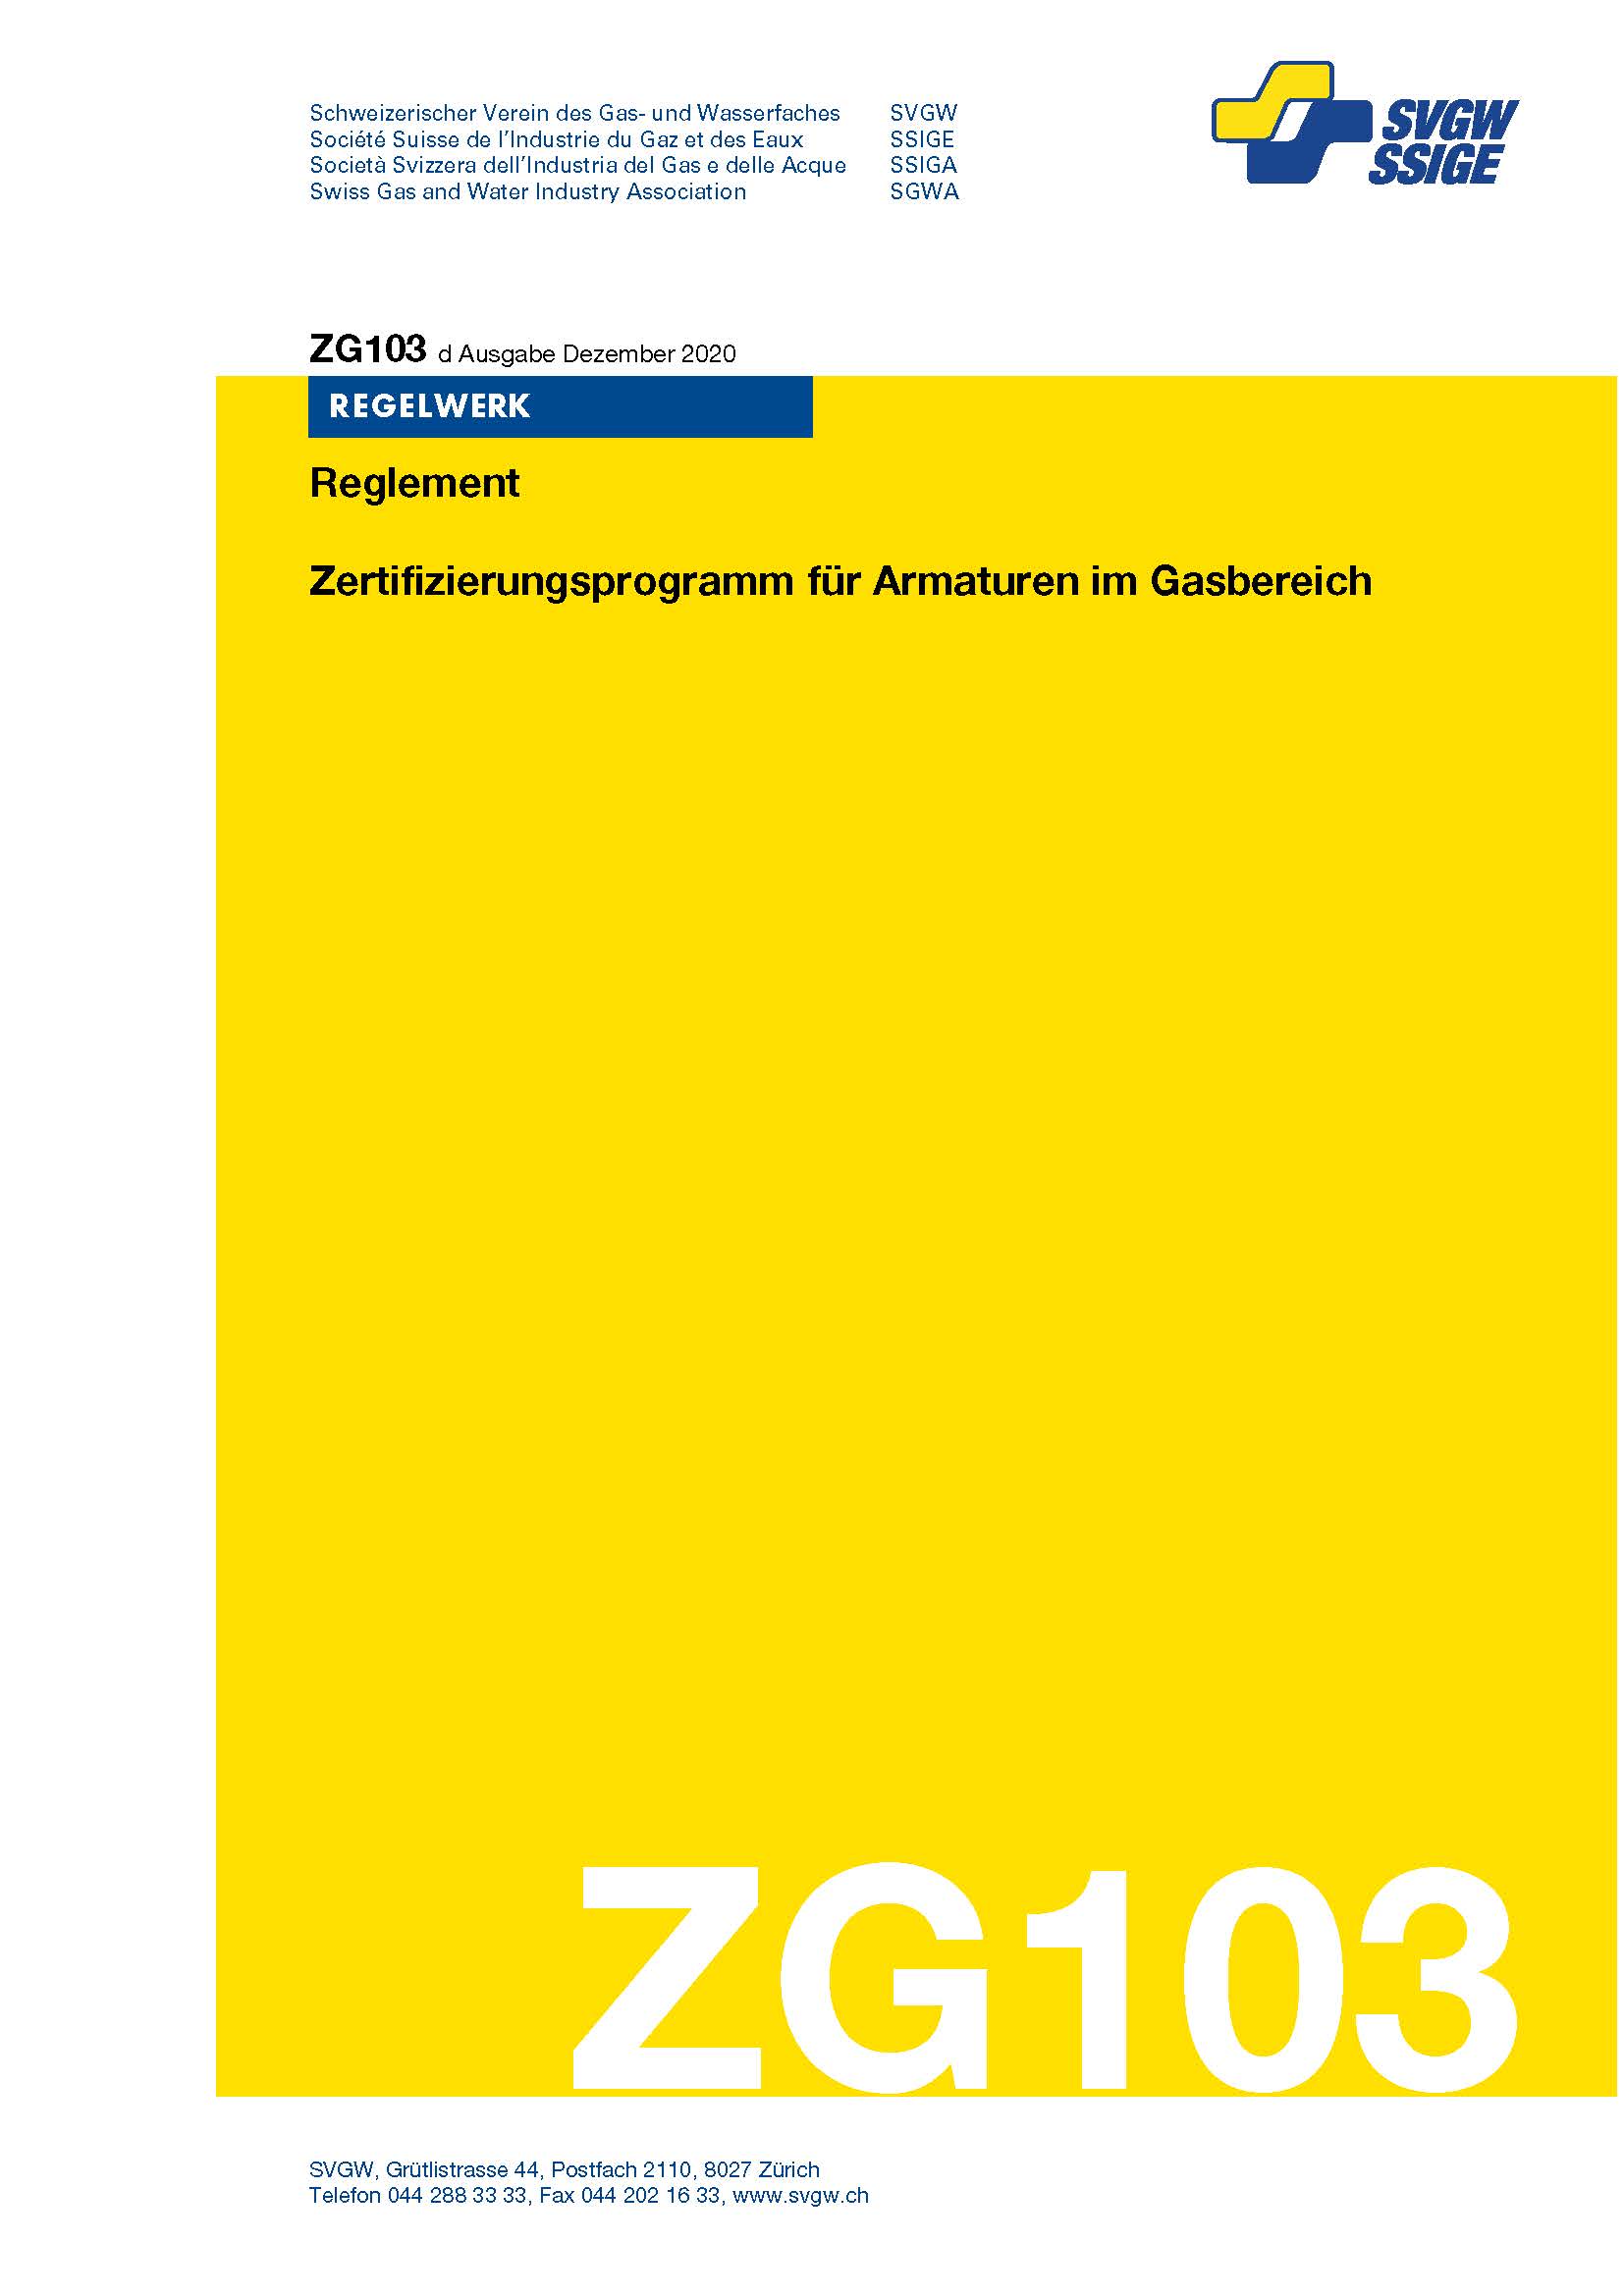 ZG103 d - Reglement; Zertifizierungsprogramm für Armaturen im Gasbereich